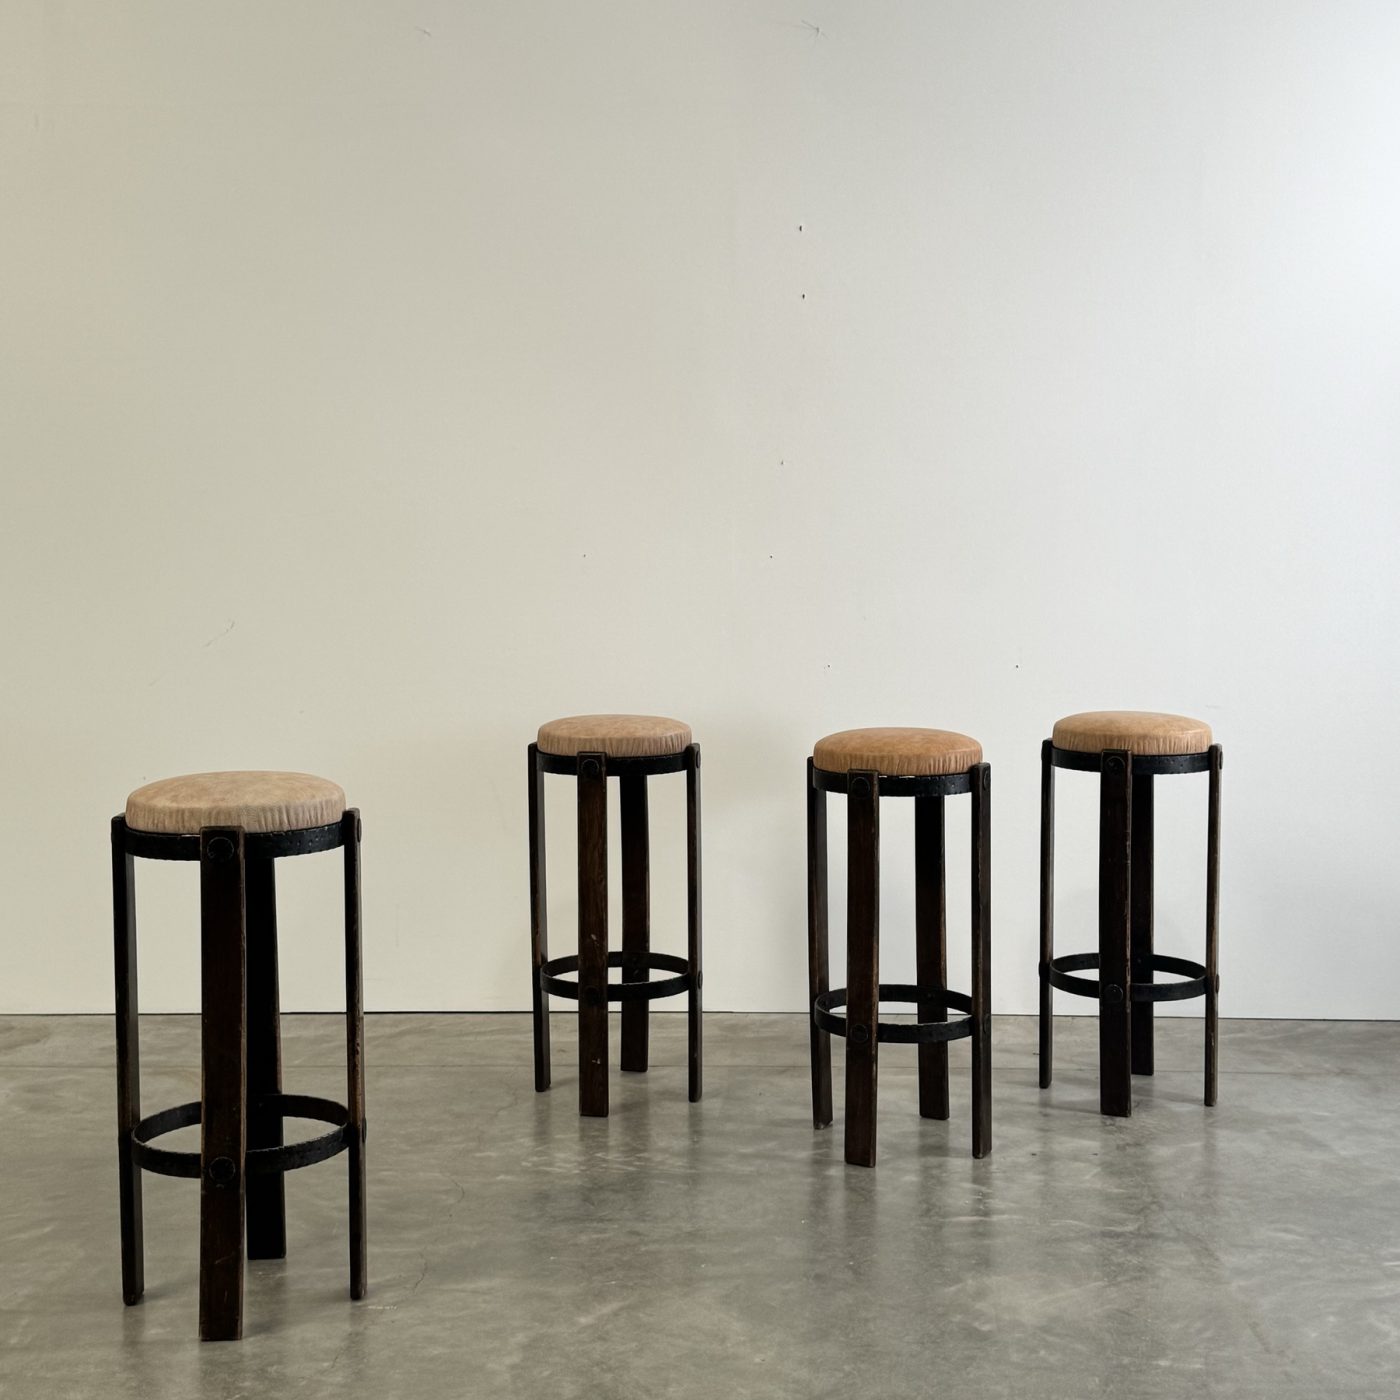 objet-vagabond-stools0003